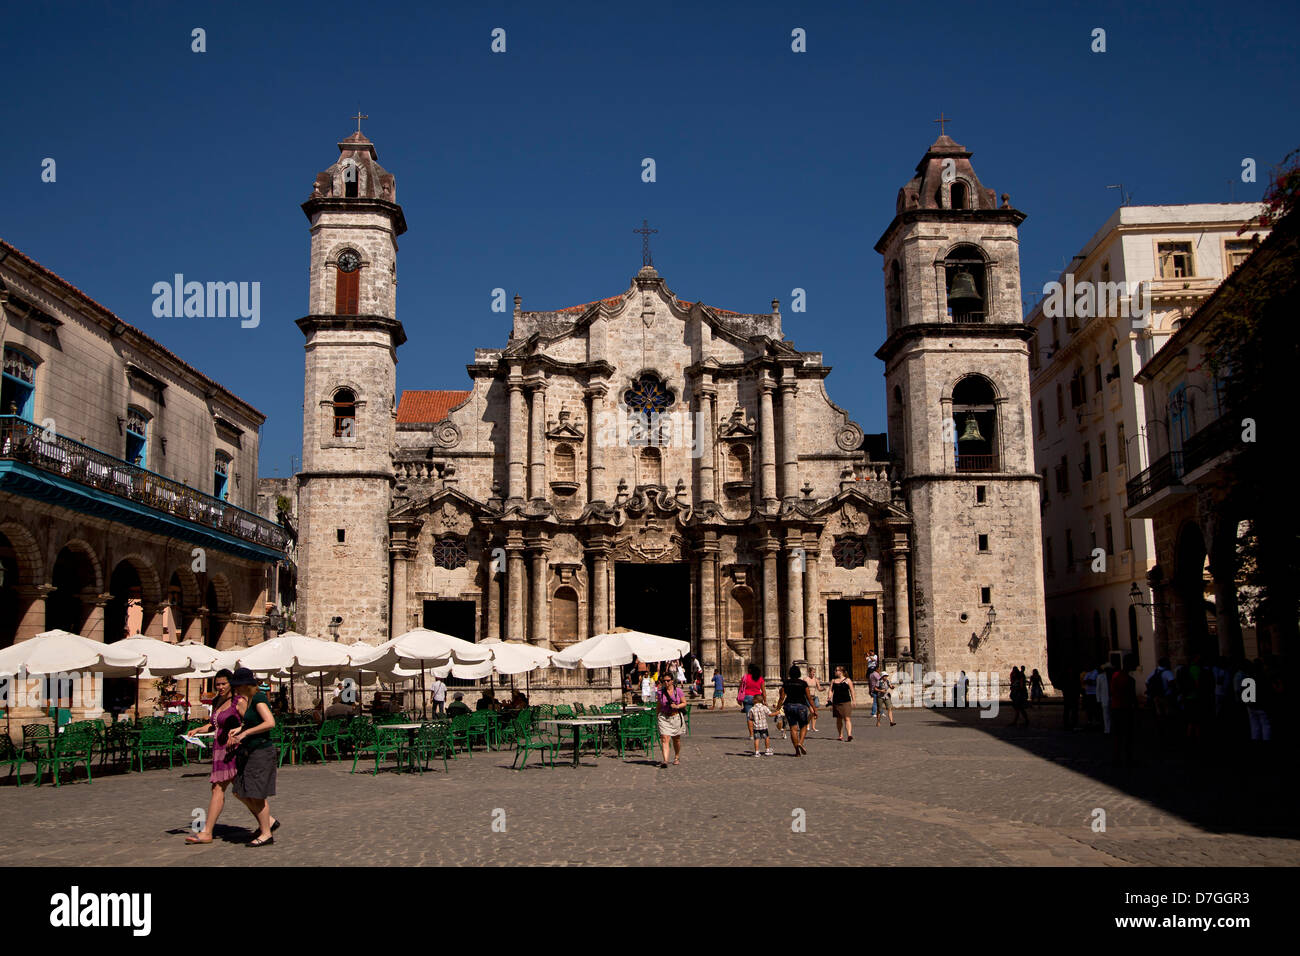 La cathédrale Catedral de San Cristobal sur la place Plaza de la Catedral de la vieille Havane La Habana Vieja, La Havane, Cuba, Caribbea Banque D'Images